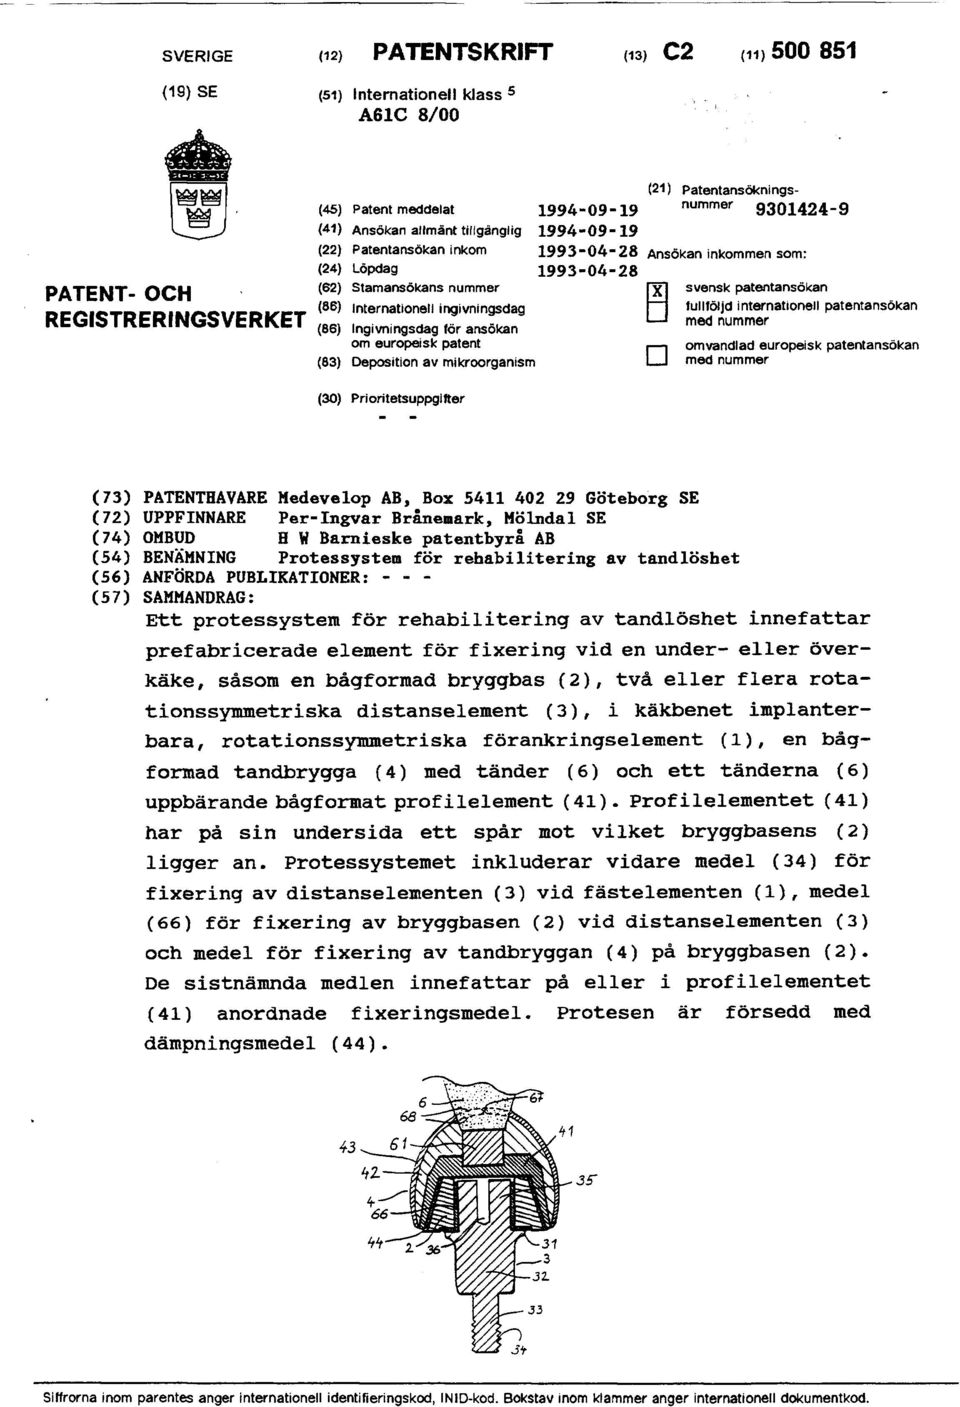 mikroorganism (30) Pri ori tetsuppgl fter (21) Patentansökningsnummer 9301424-9 svensk patentansökan fullföljd internationell patentansökan med nummer omvandlad europeisk patentansökan med nummer